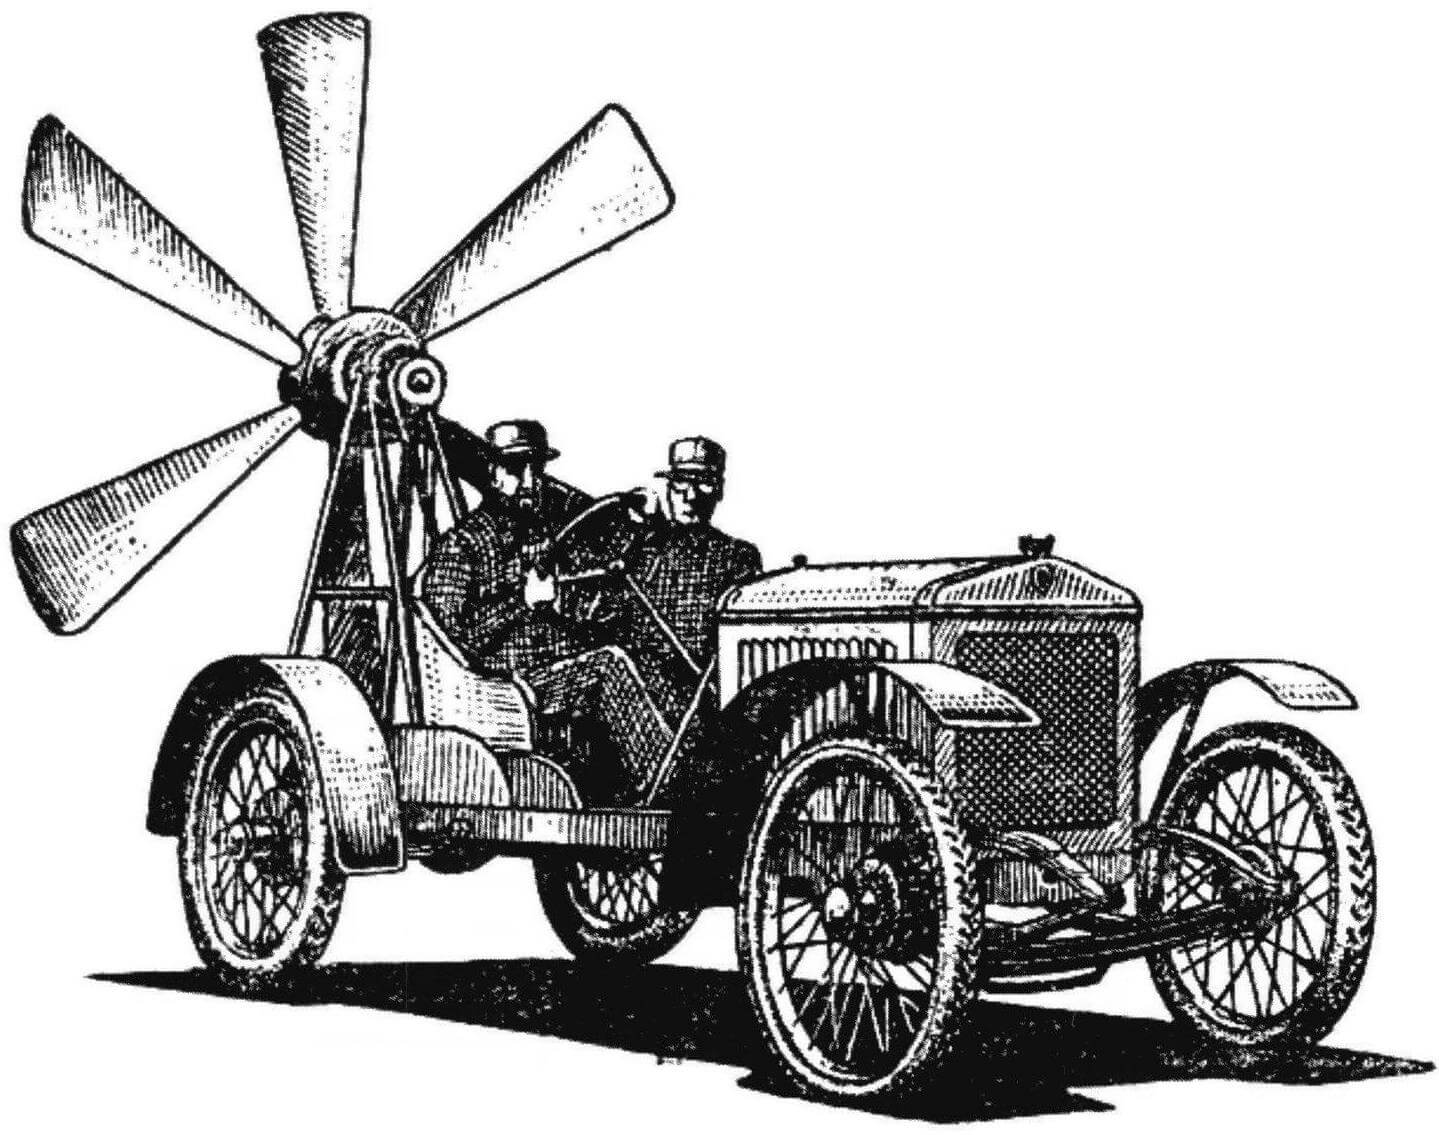 Первые аэромобили напоминали «ветряные мельницы на колесах» (иллюстрация начала XX века)